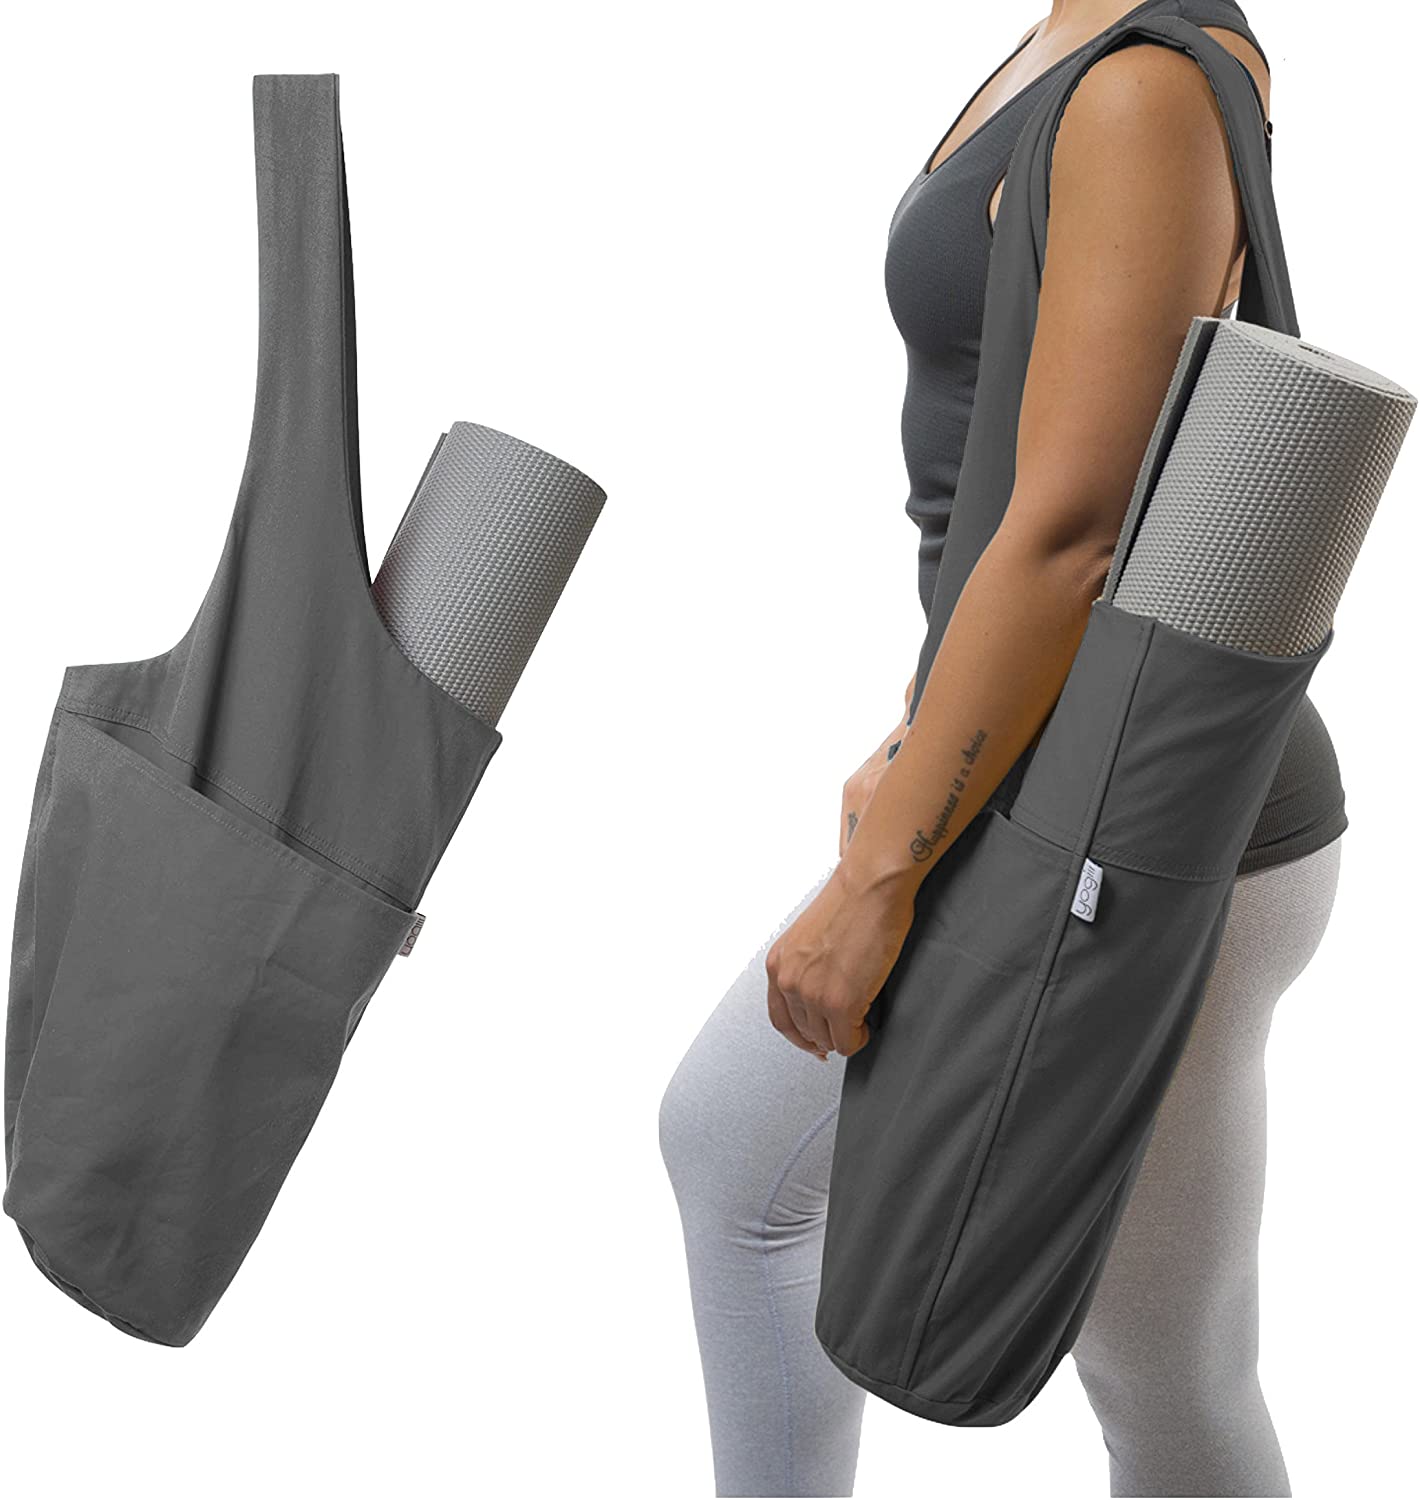 Bolsas y soportes para esterillas de yoga que se adaptan a todas tus cosas,  esterilla de yoga con bolsa con bolsillo lateral grande y bolsillo con